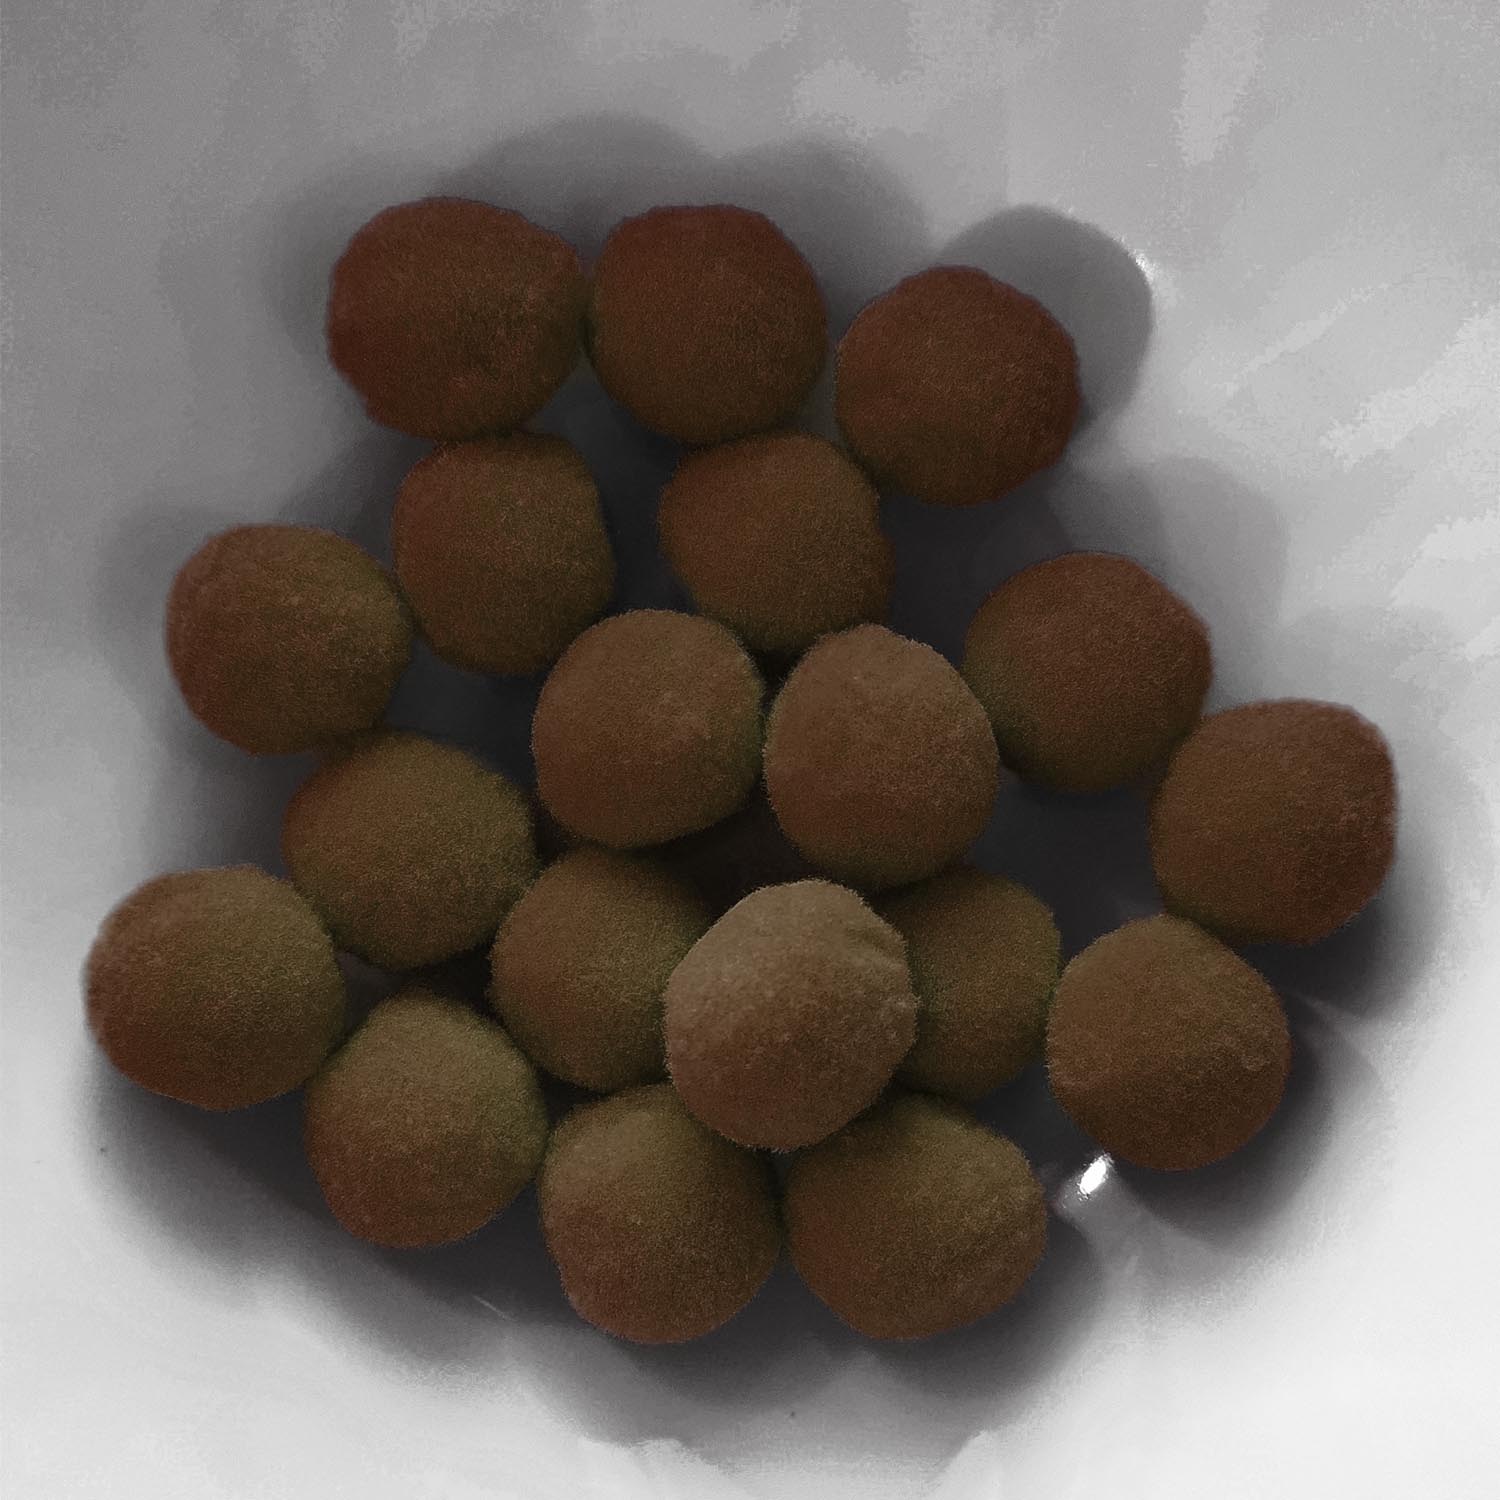 PomPon / Bälle aus Baumwolle - 20 mm / 25er Set - Braun